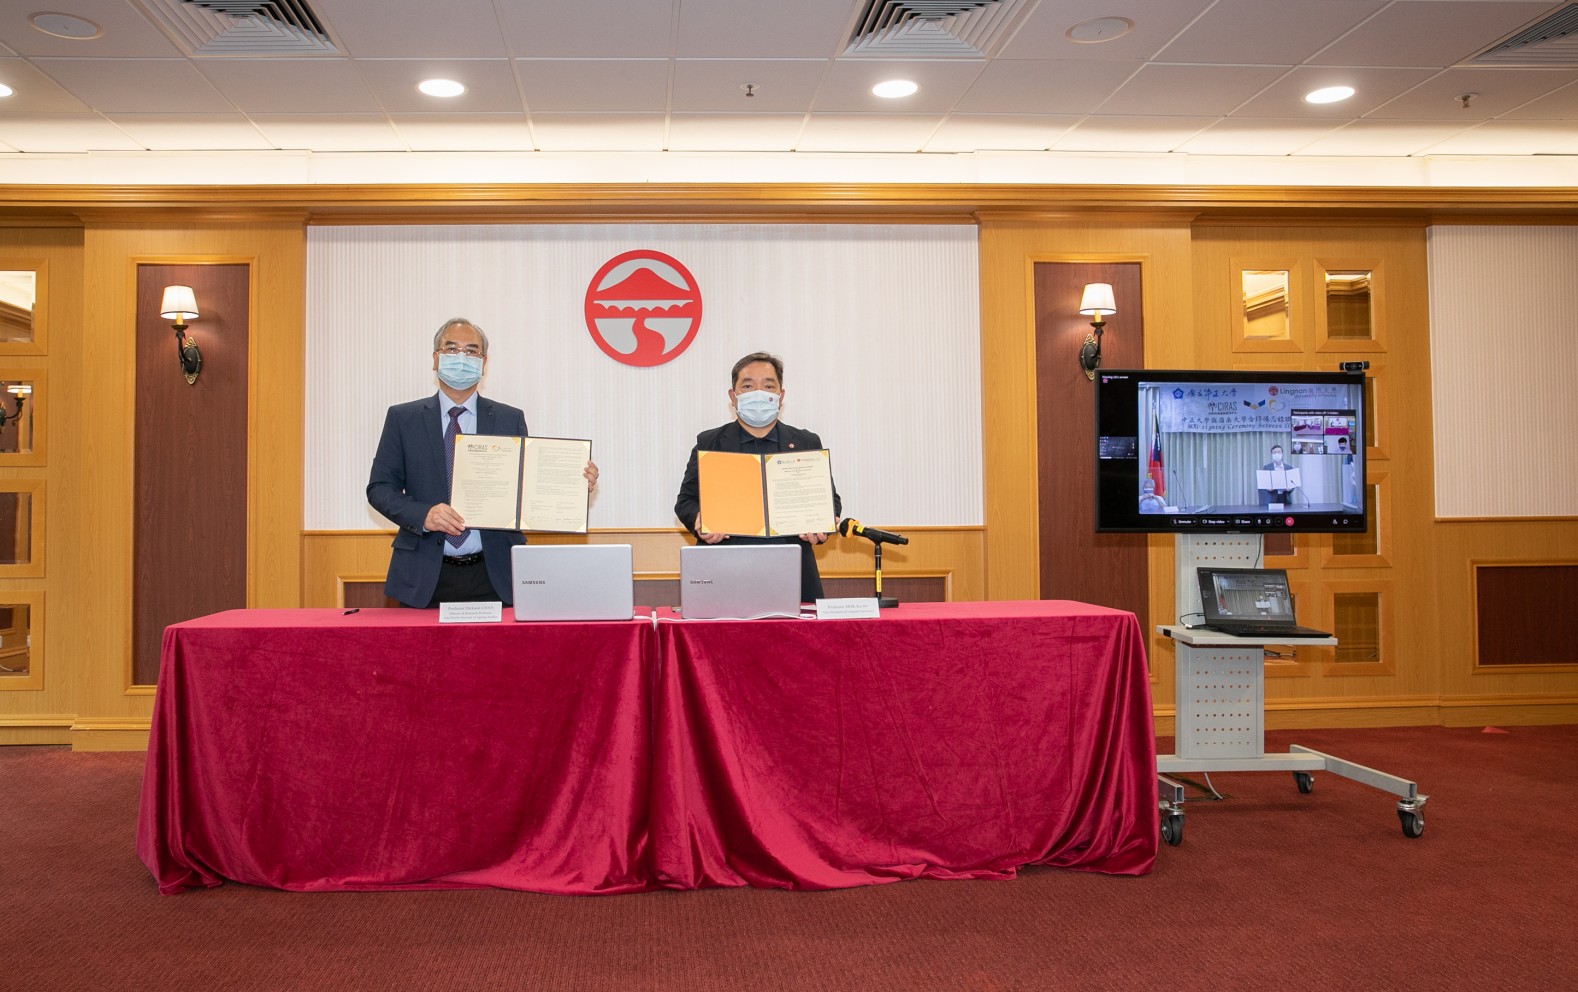 岭大与台湾的中正大签订两校学术合作备忘录，促进学术交流。